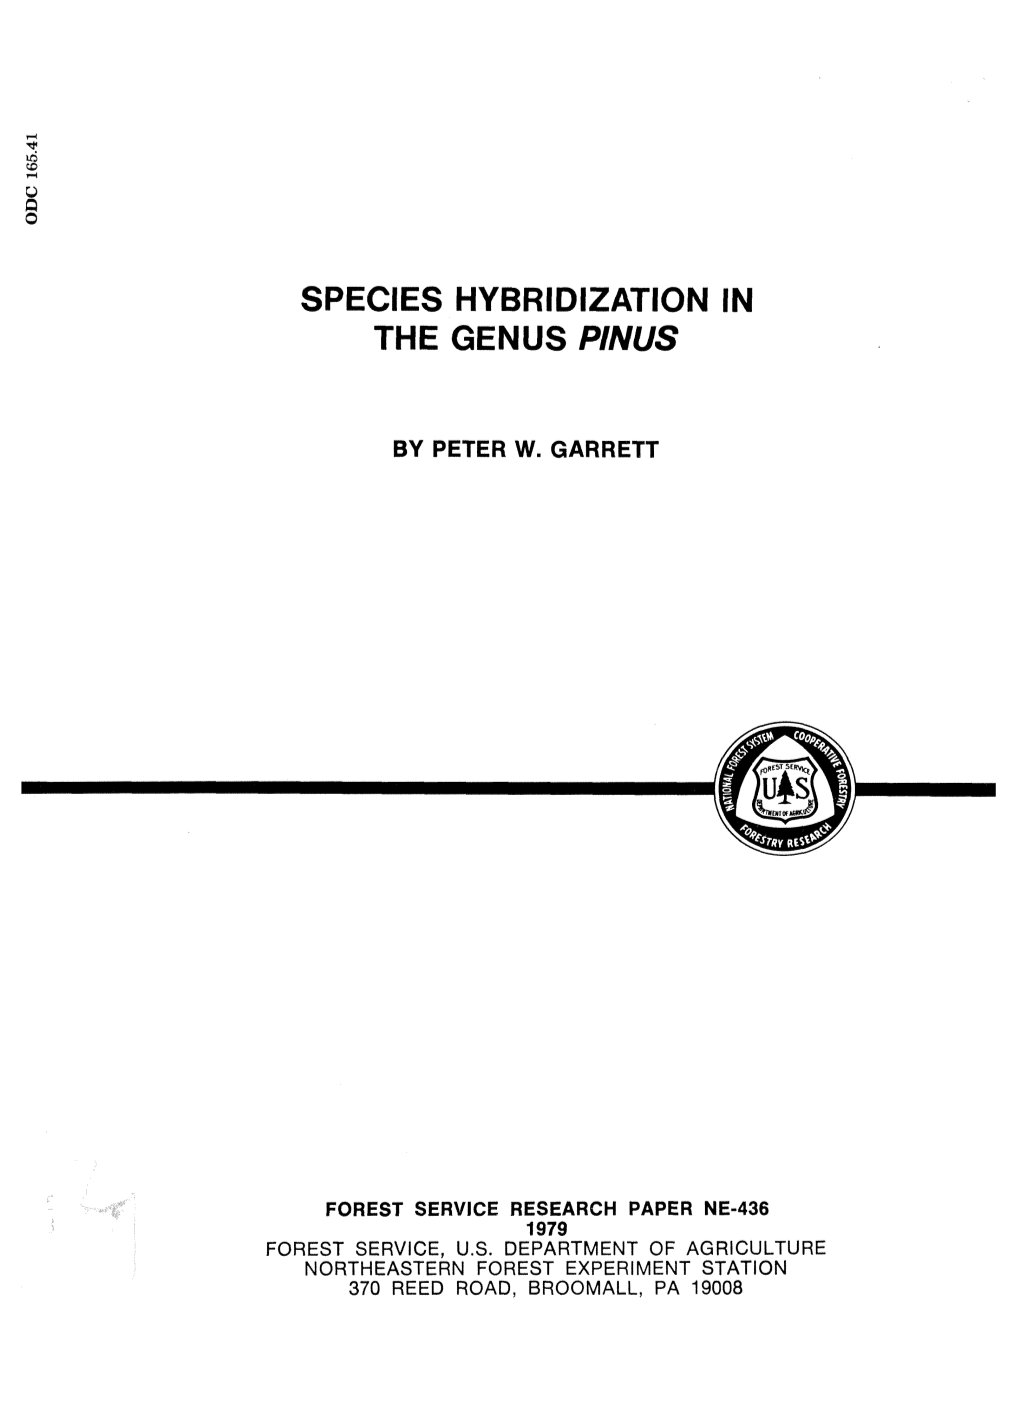 Species Hybridization in the Genus Pinus